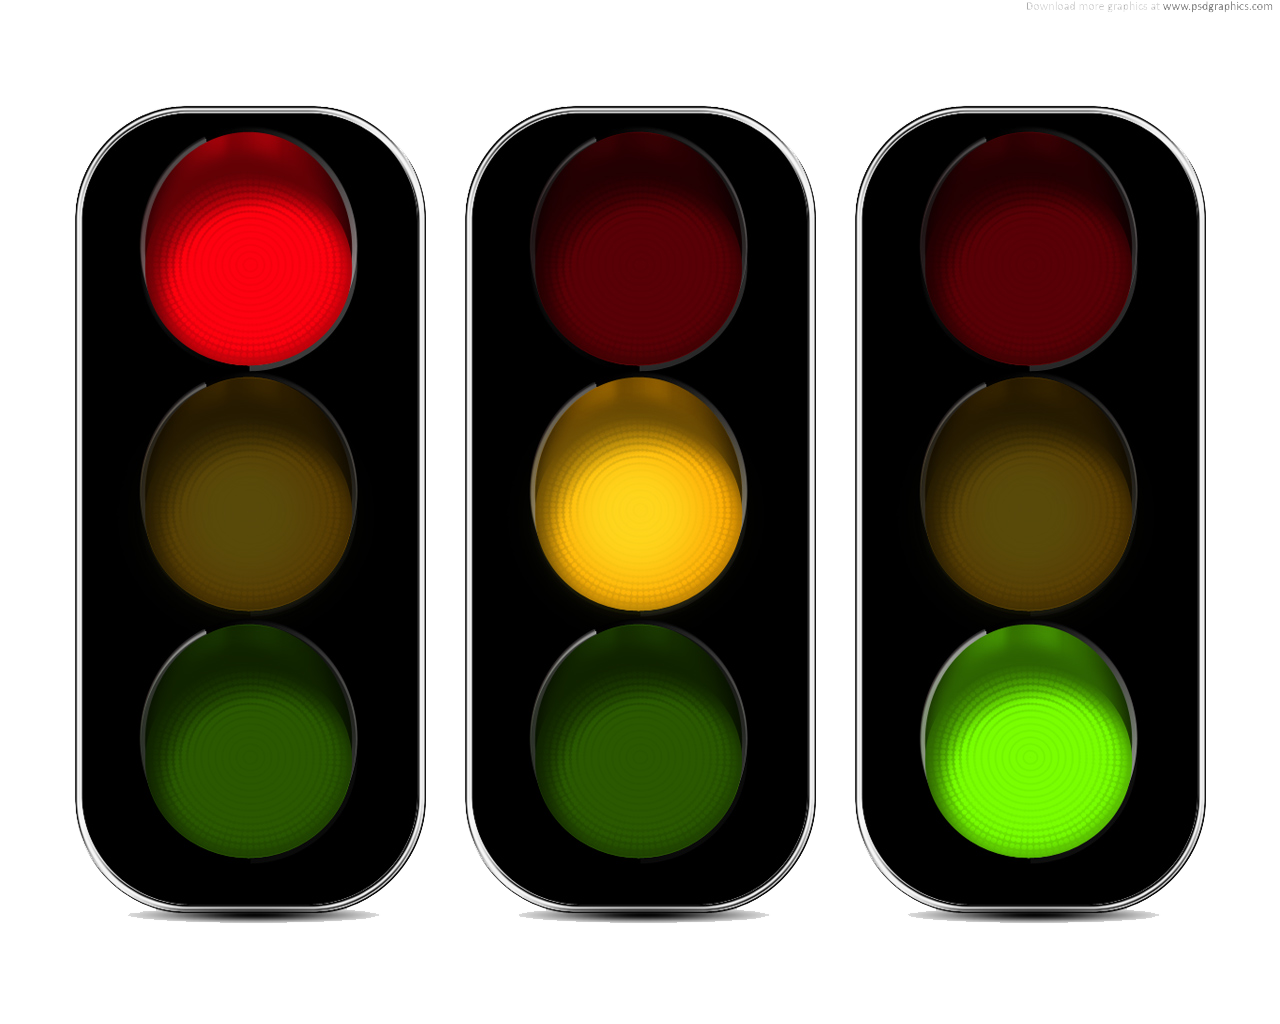 File:Traffic light yellow-766